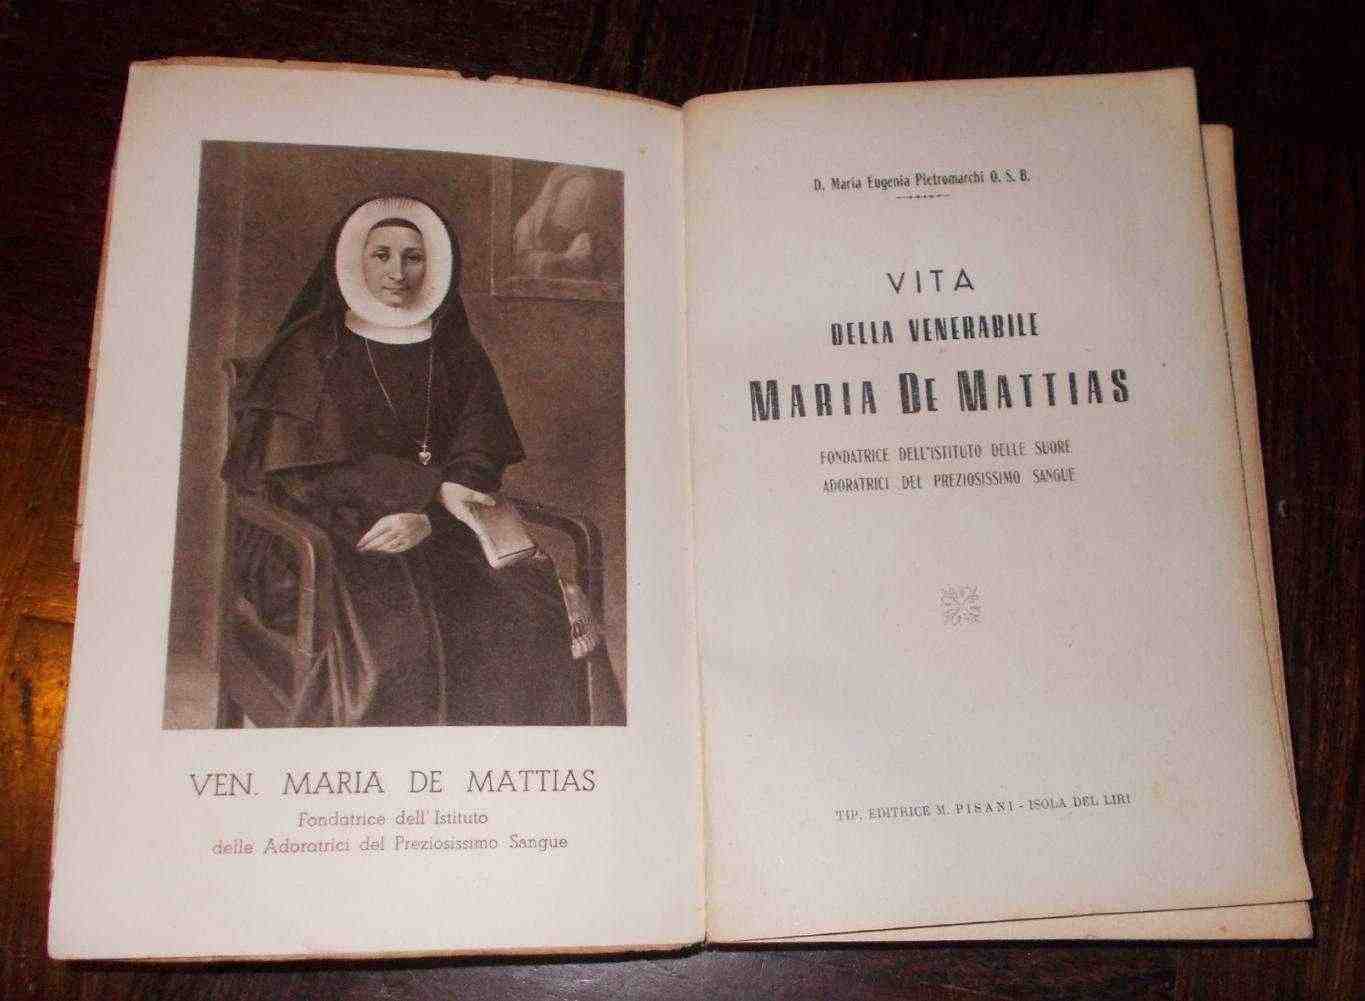 VITA DELLA VENERABILE MARIA DE MATTIAS 1°EDIZIONE 1947 PISANI